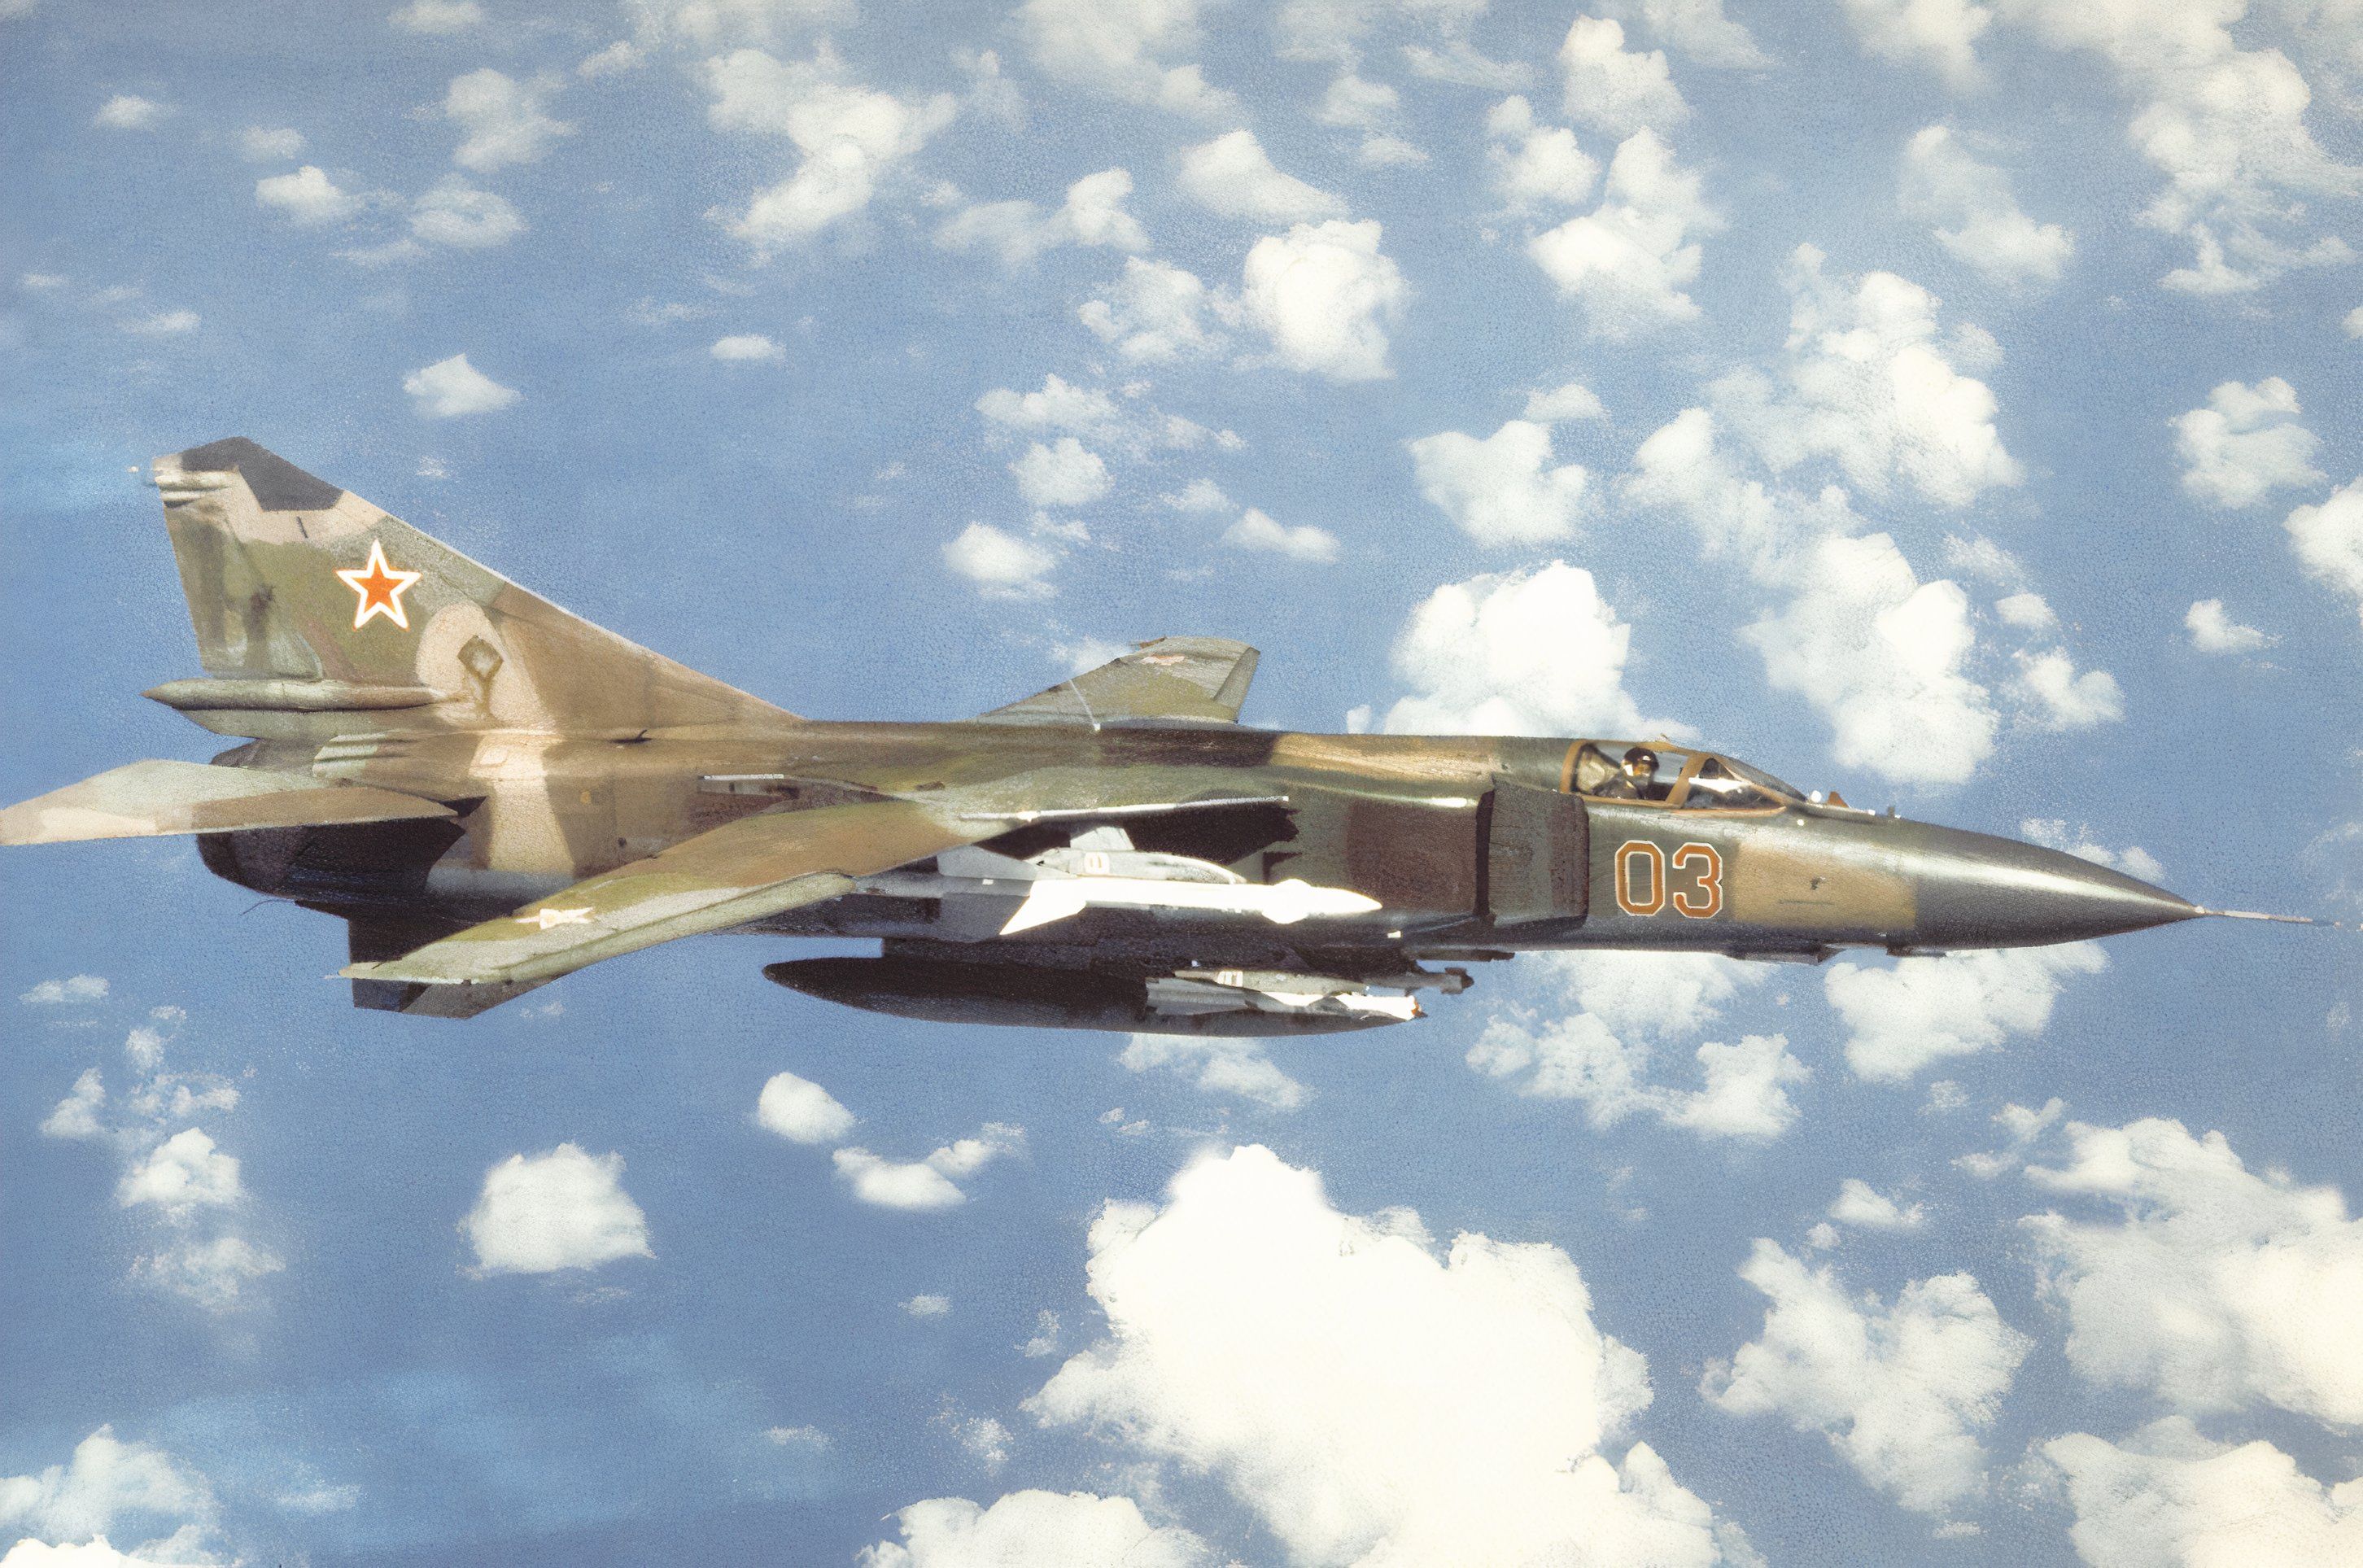  Soviet MiG-23 Flogger aircraft.